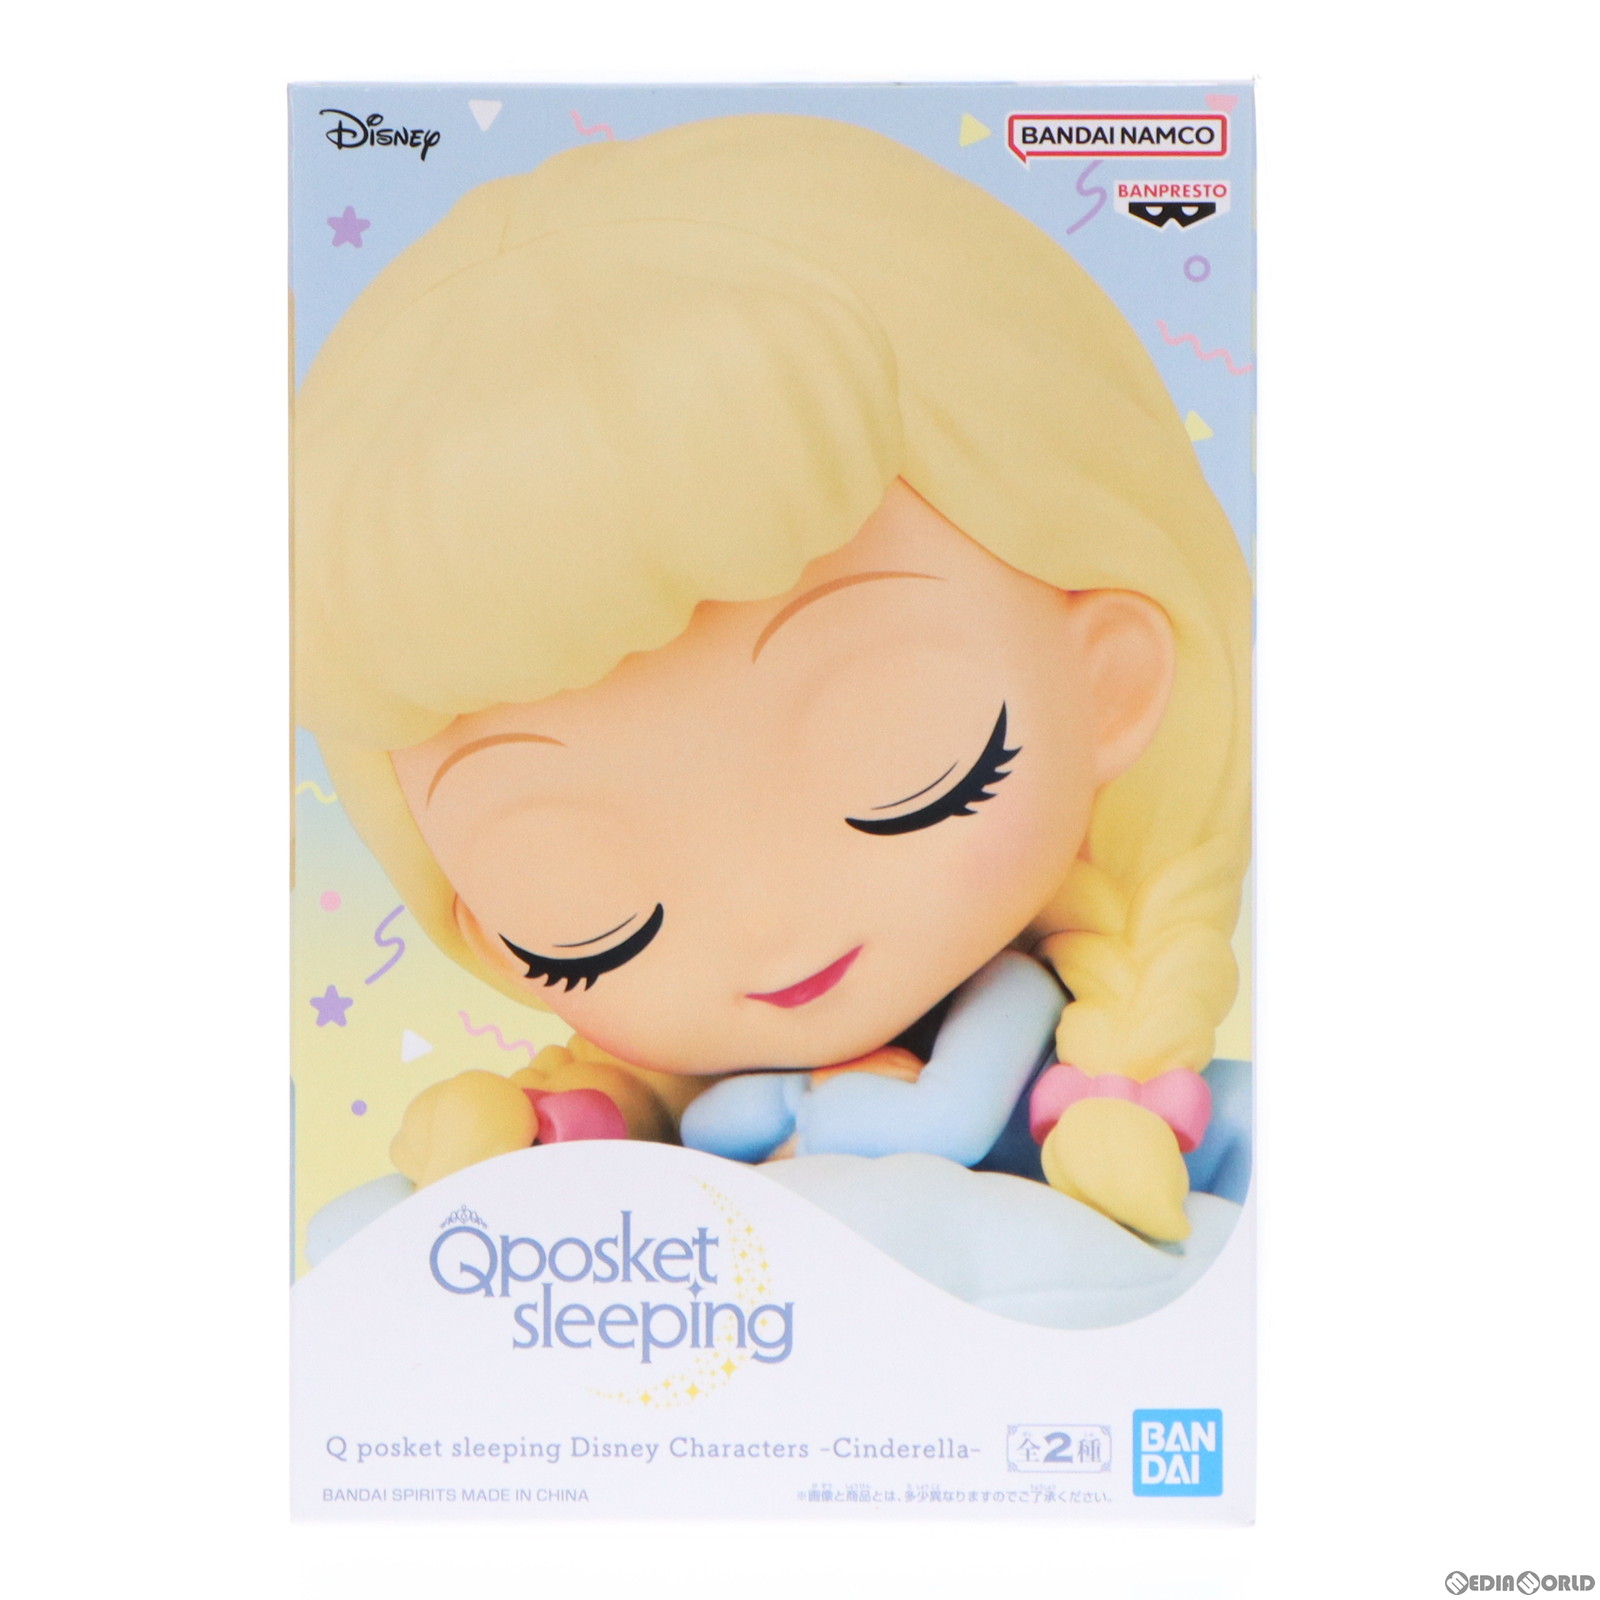 【中古即納】[FIG]シンデレラ B(クッションブルー) Q posket sleeping Disney Characters -Cinderella- フィギュア プライズ(2631215) バ